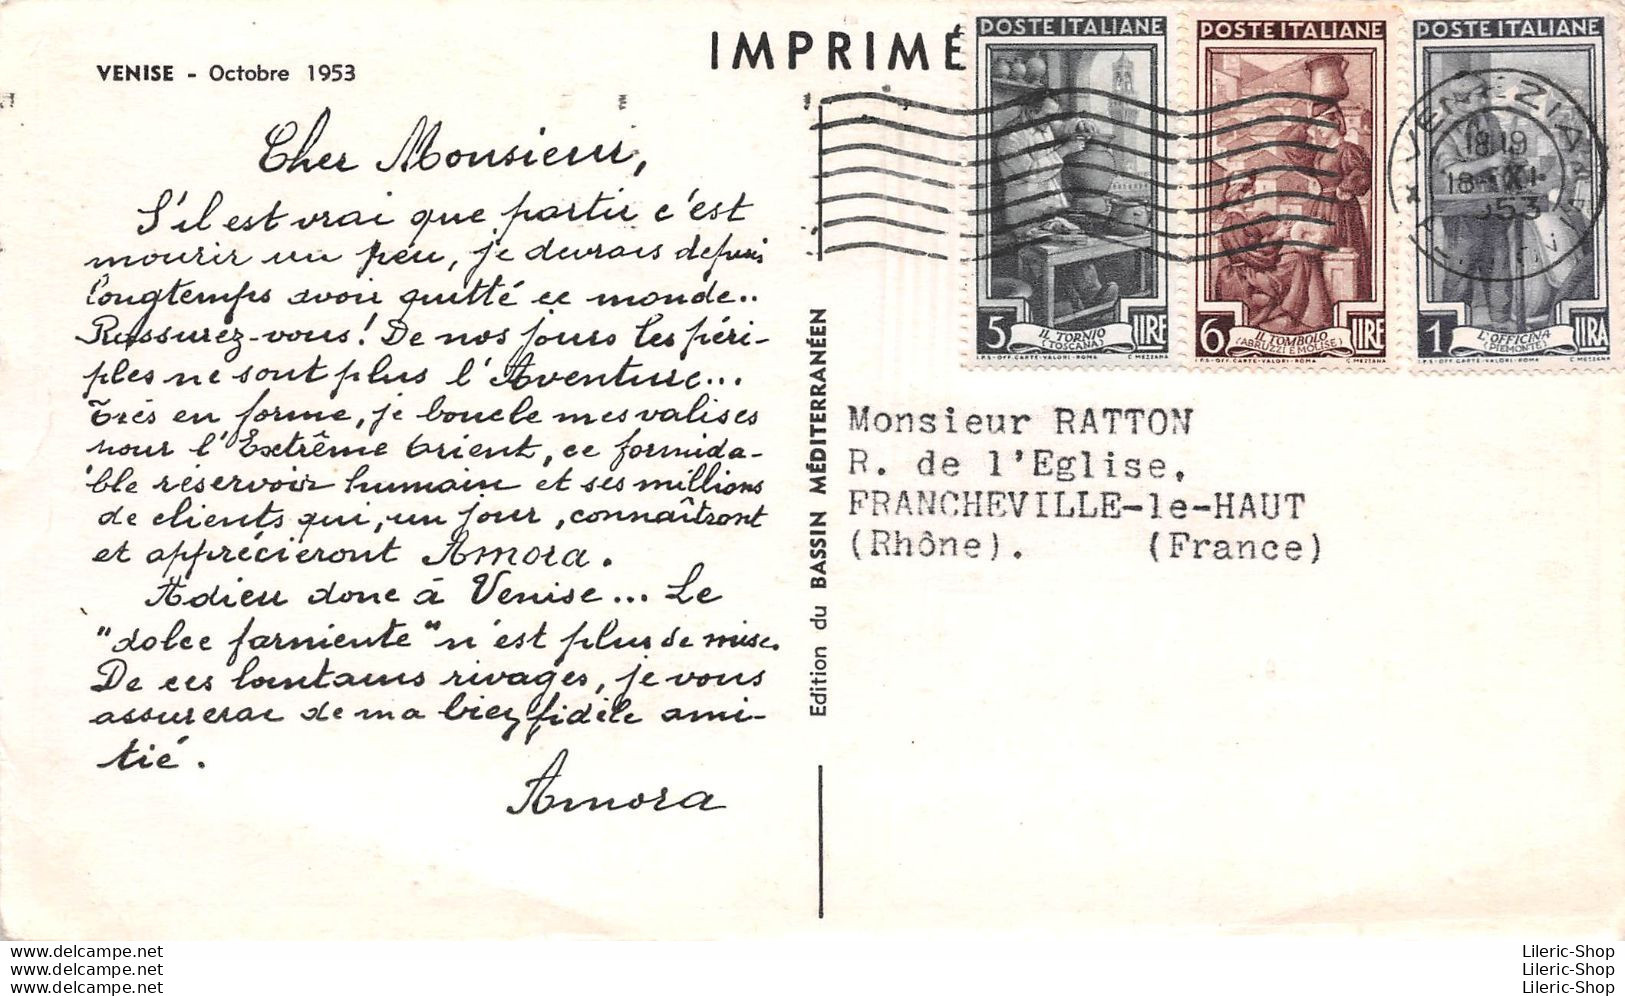 CPSM 180X105 Moutarde Amora - PROSPECTION  ASIATIQUE - VENISE - Octobre 1953 - Publicité